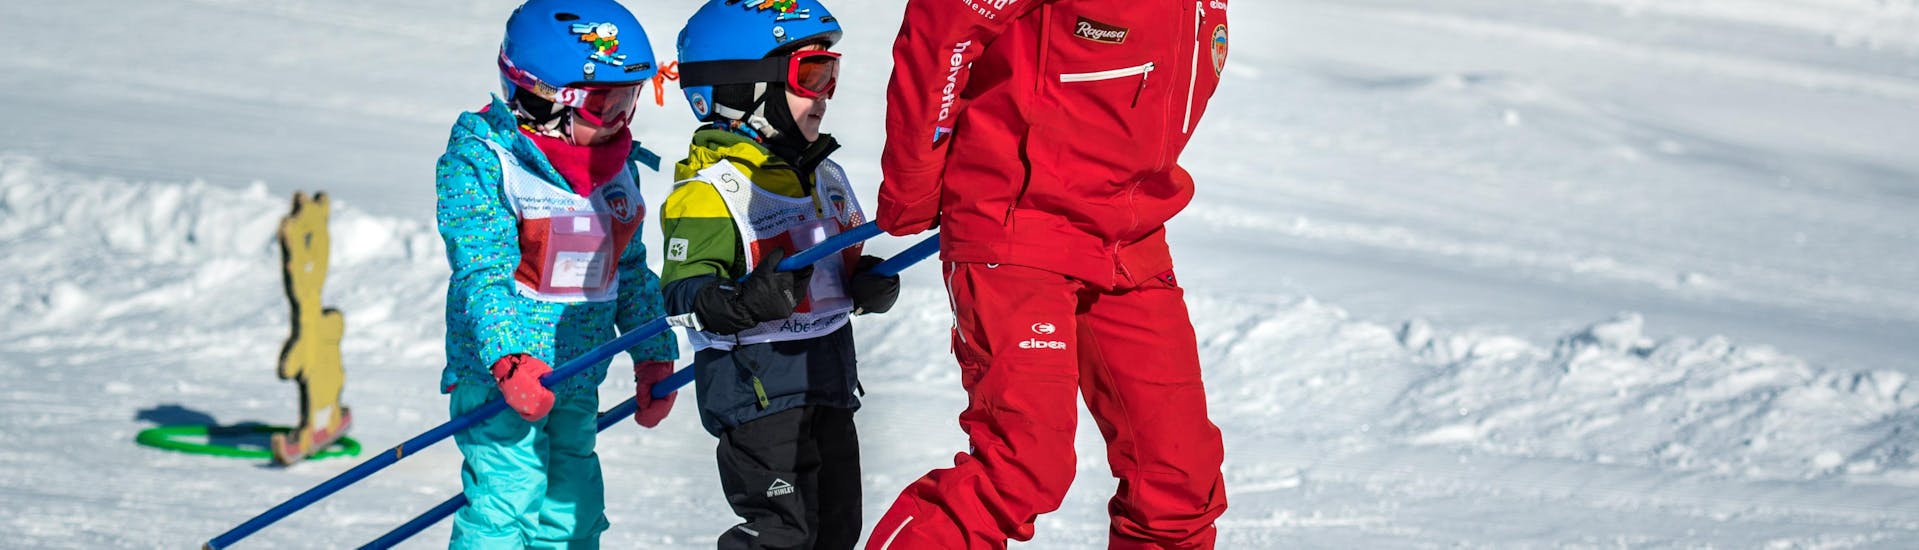 Dos pequeños esquiadores se dejan llevar por su instructor de esquí de la Grindelwald Ski School en Kinderland, durante sus clases de esquí para niños "bambini", para principiantes.